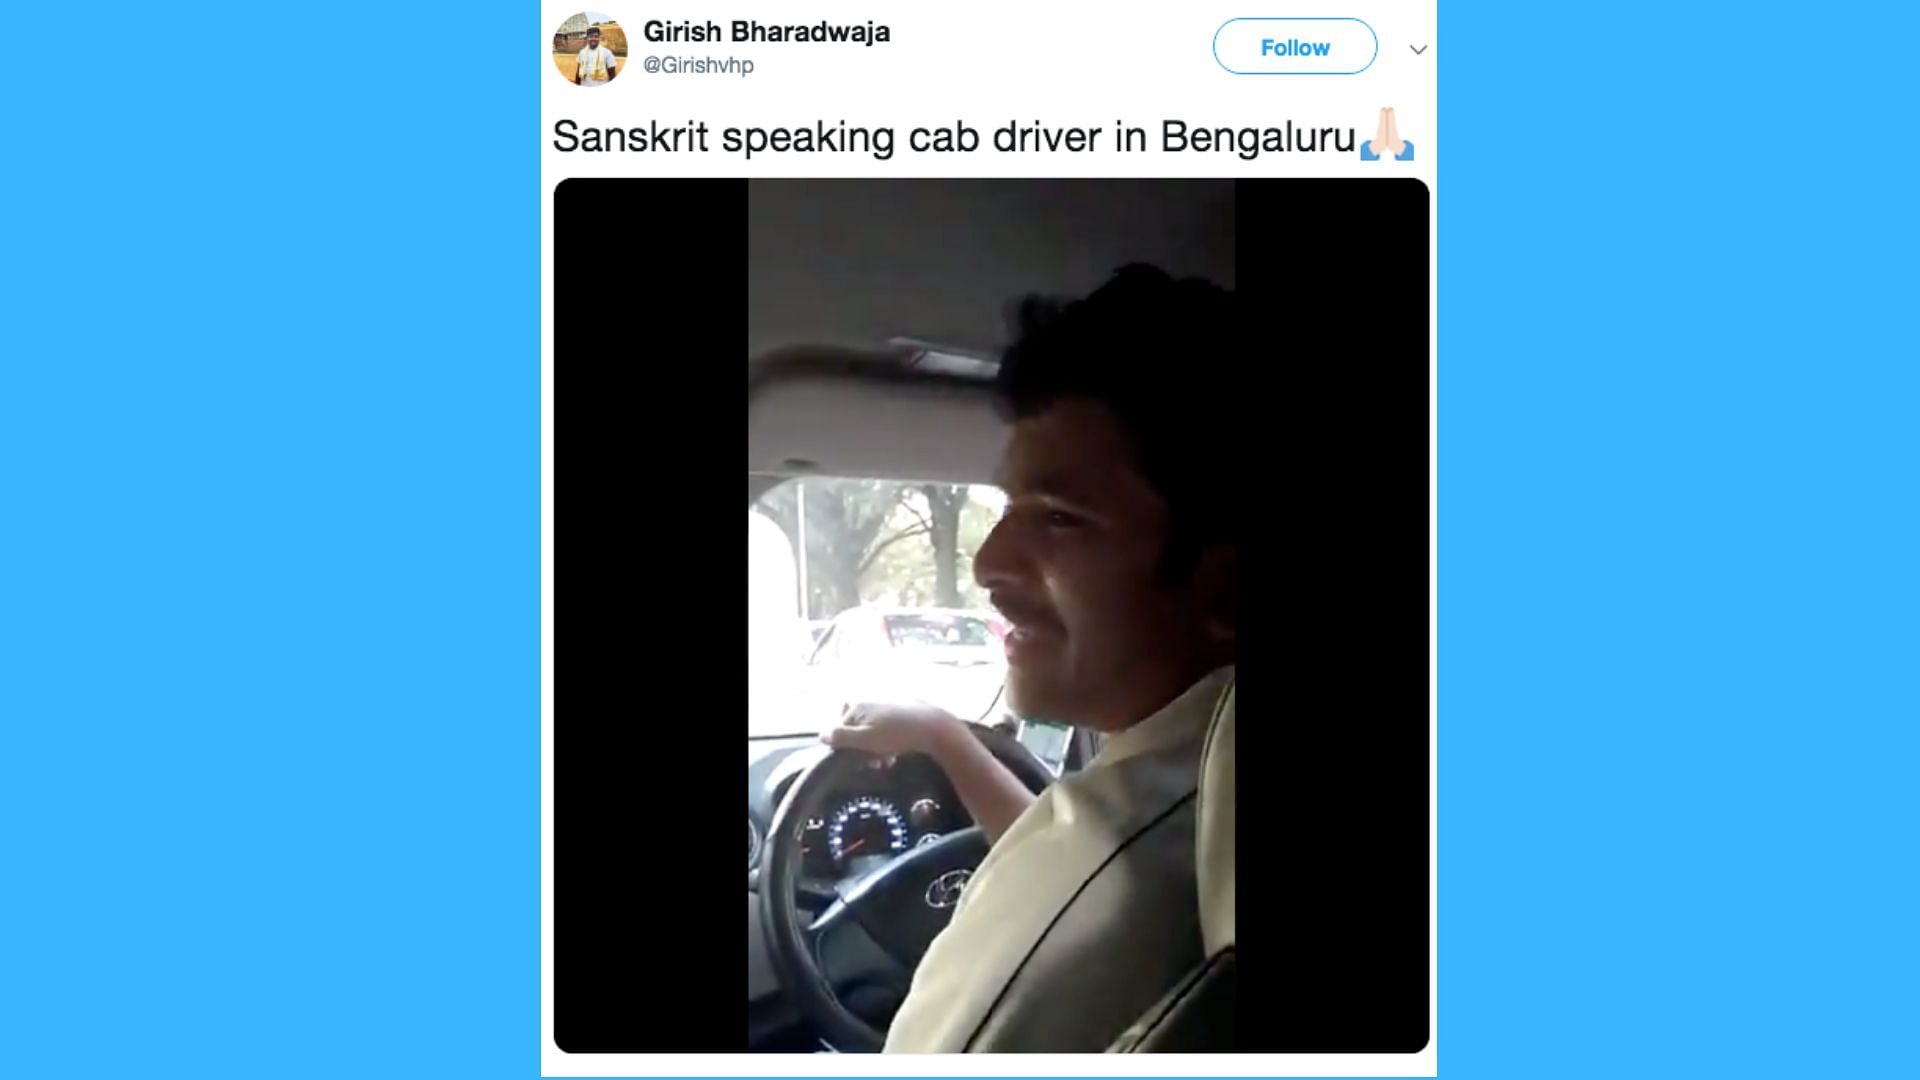 Ola cab driver speaks fluent sanskrit and goes viral.